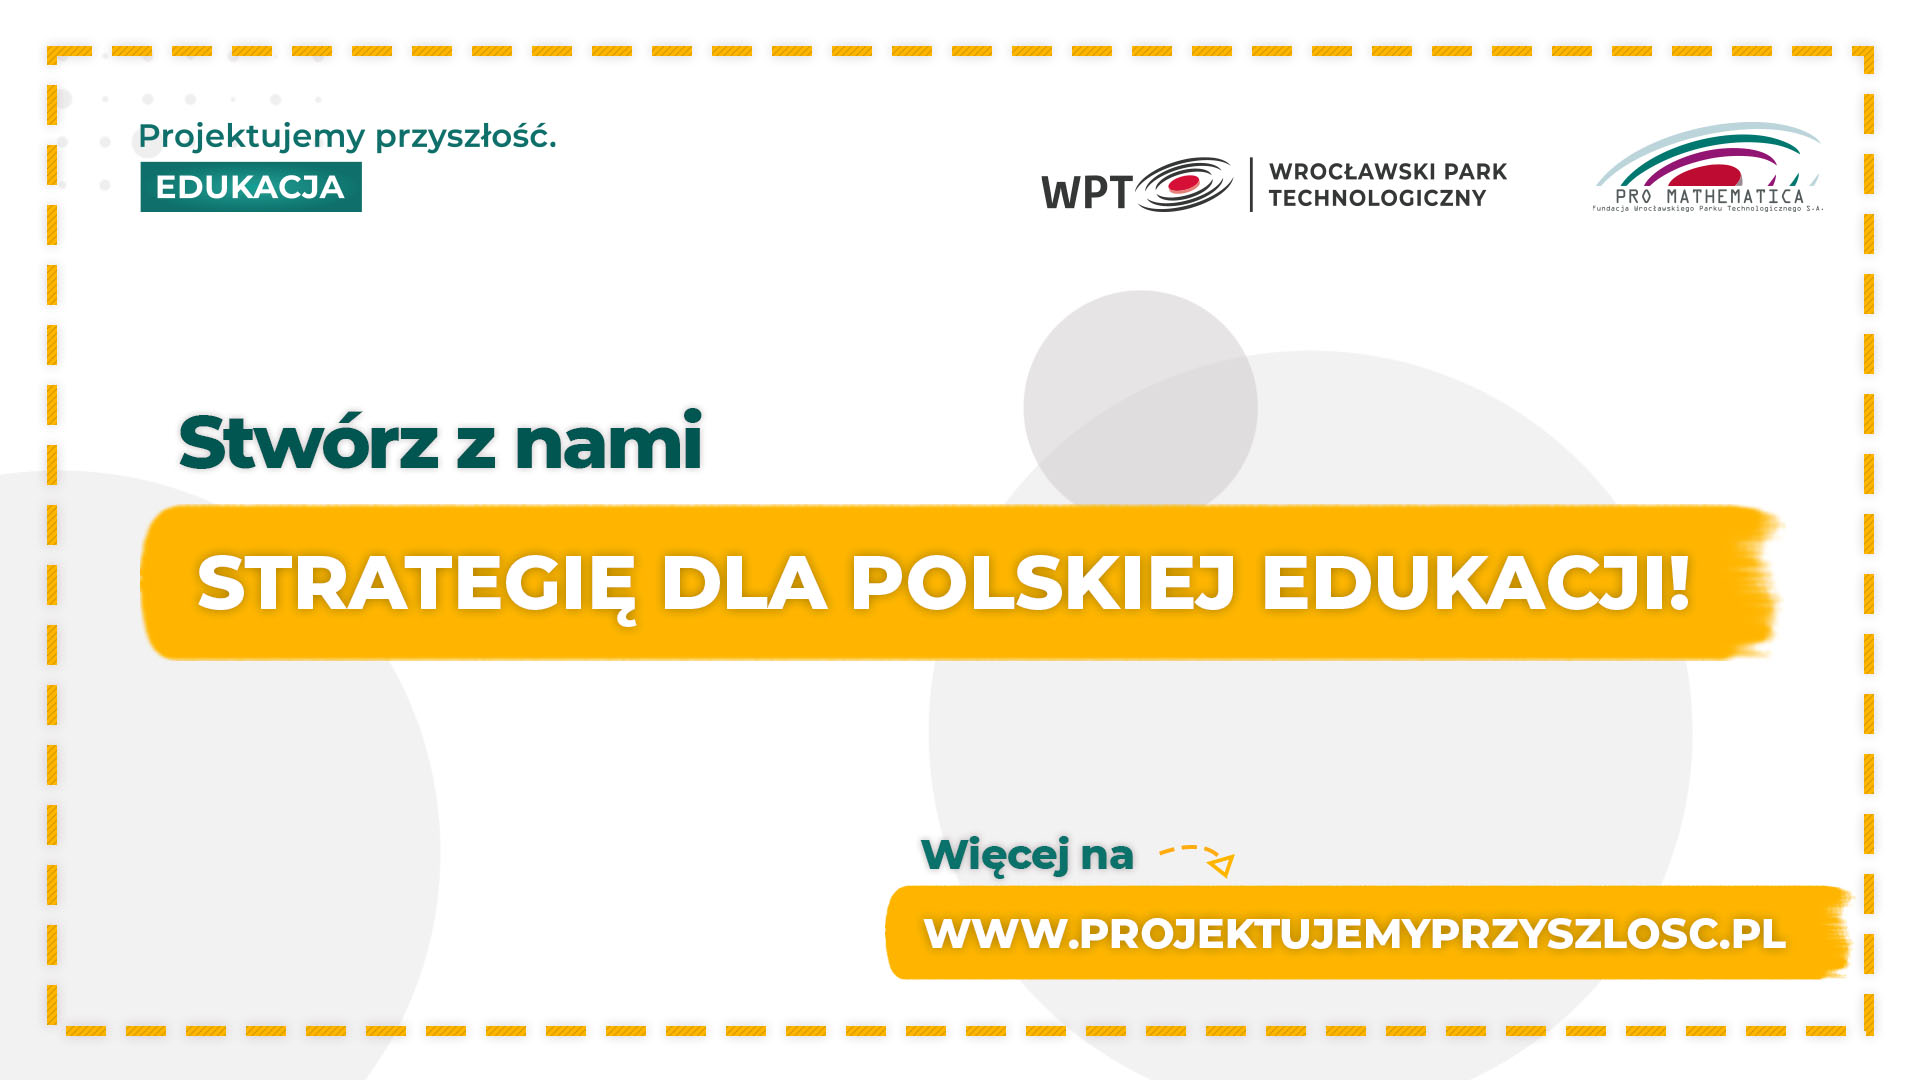 Stwórz z nami strategię przyszłości polskiej edukacji!